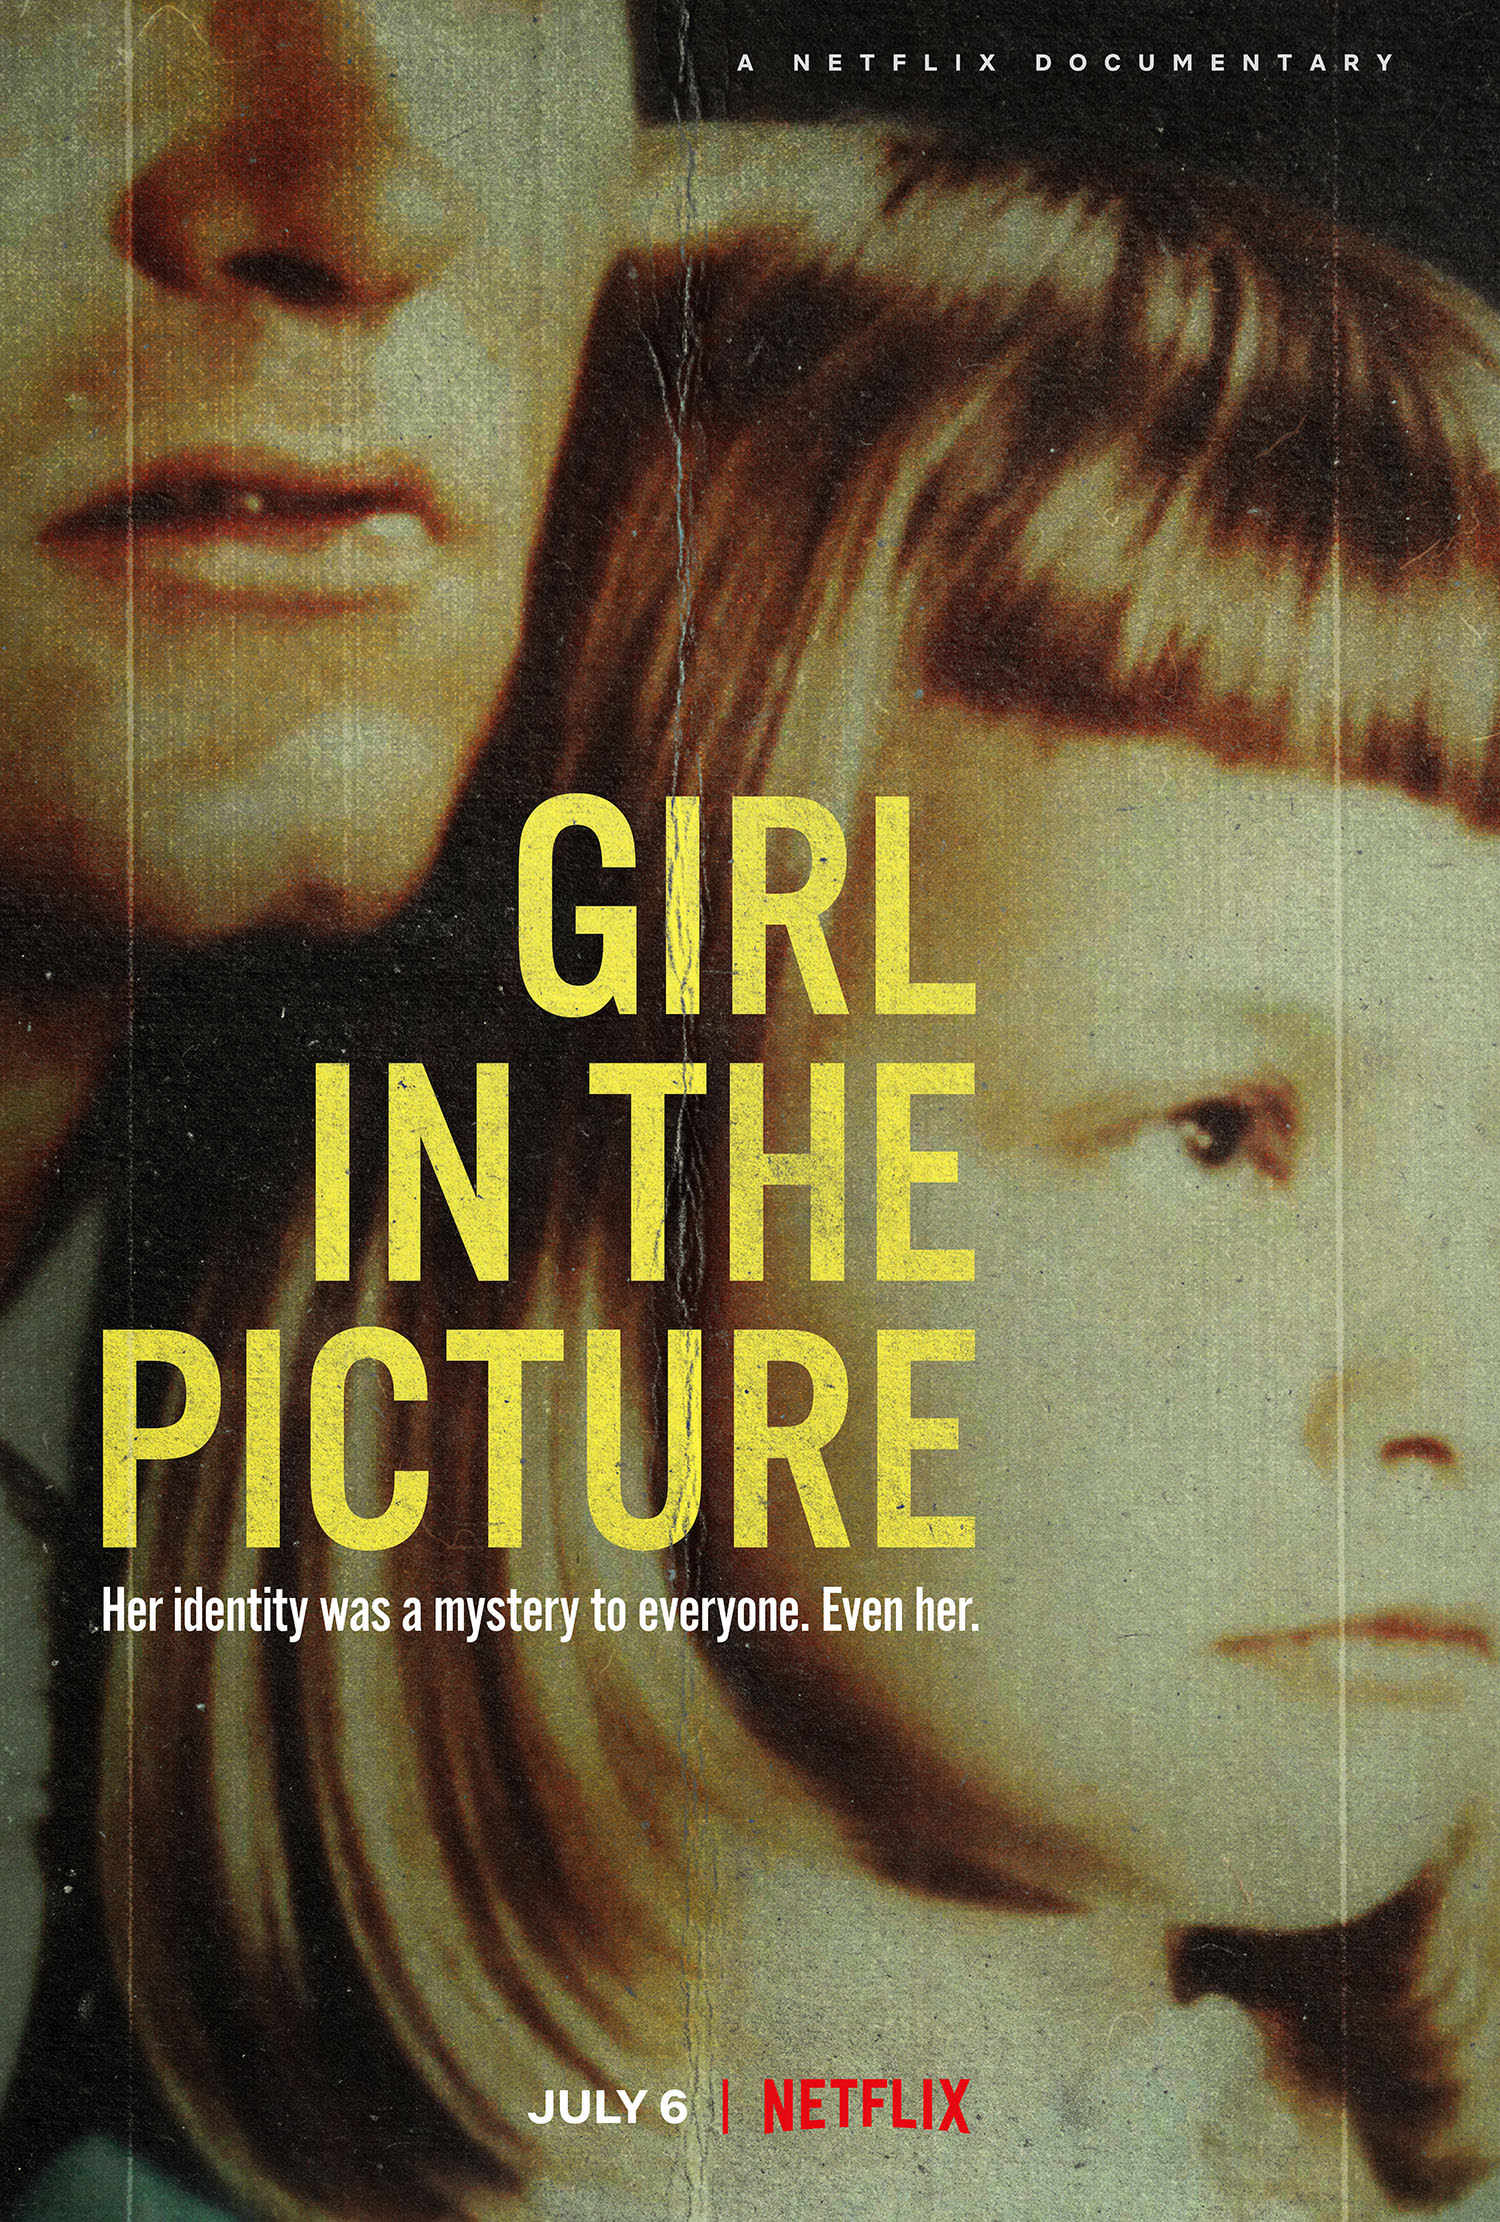 Netflix’in gerçek suç belgeseli Girl in the Picture ne hakkında?